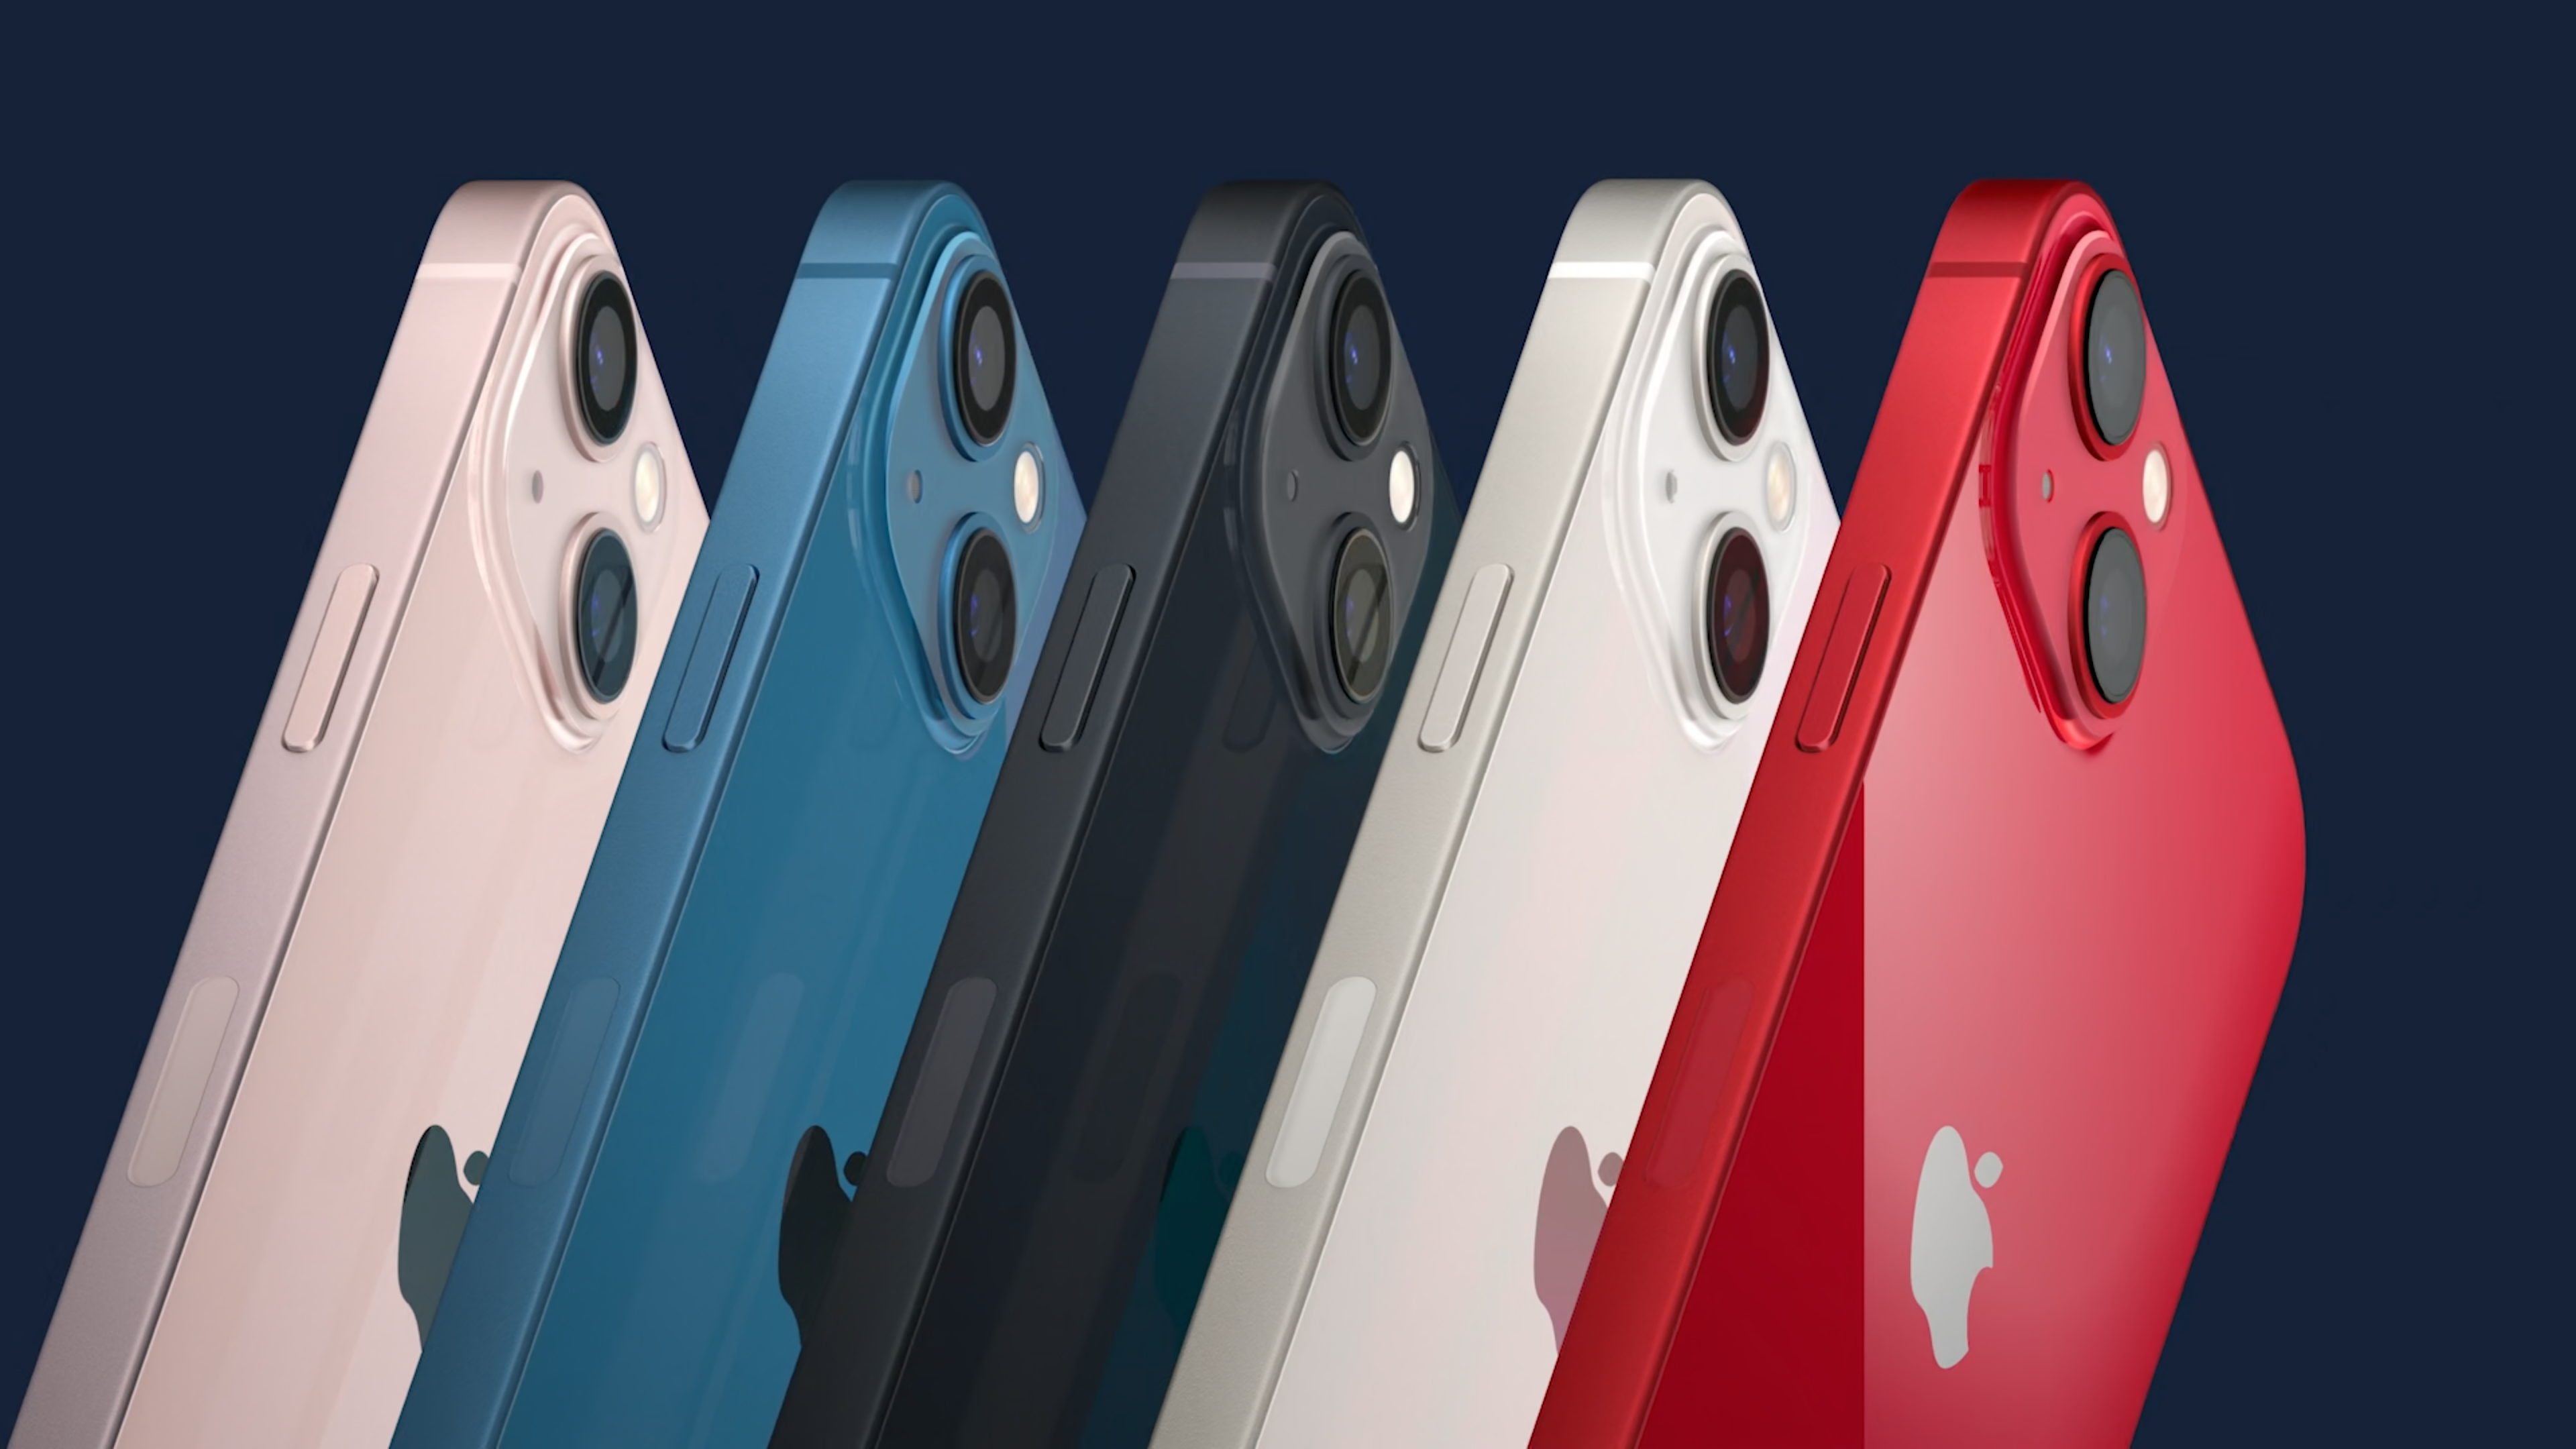 Apple iPhone 13 existuje hneď v 5 rôznych farebných variantoch - biela (Starlight), tmavo šedá (Midnight), modrá (Blue), červená (Product RED) a ružová (Pink).